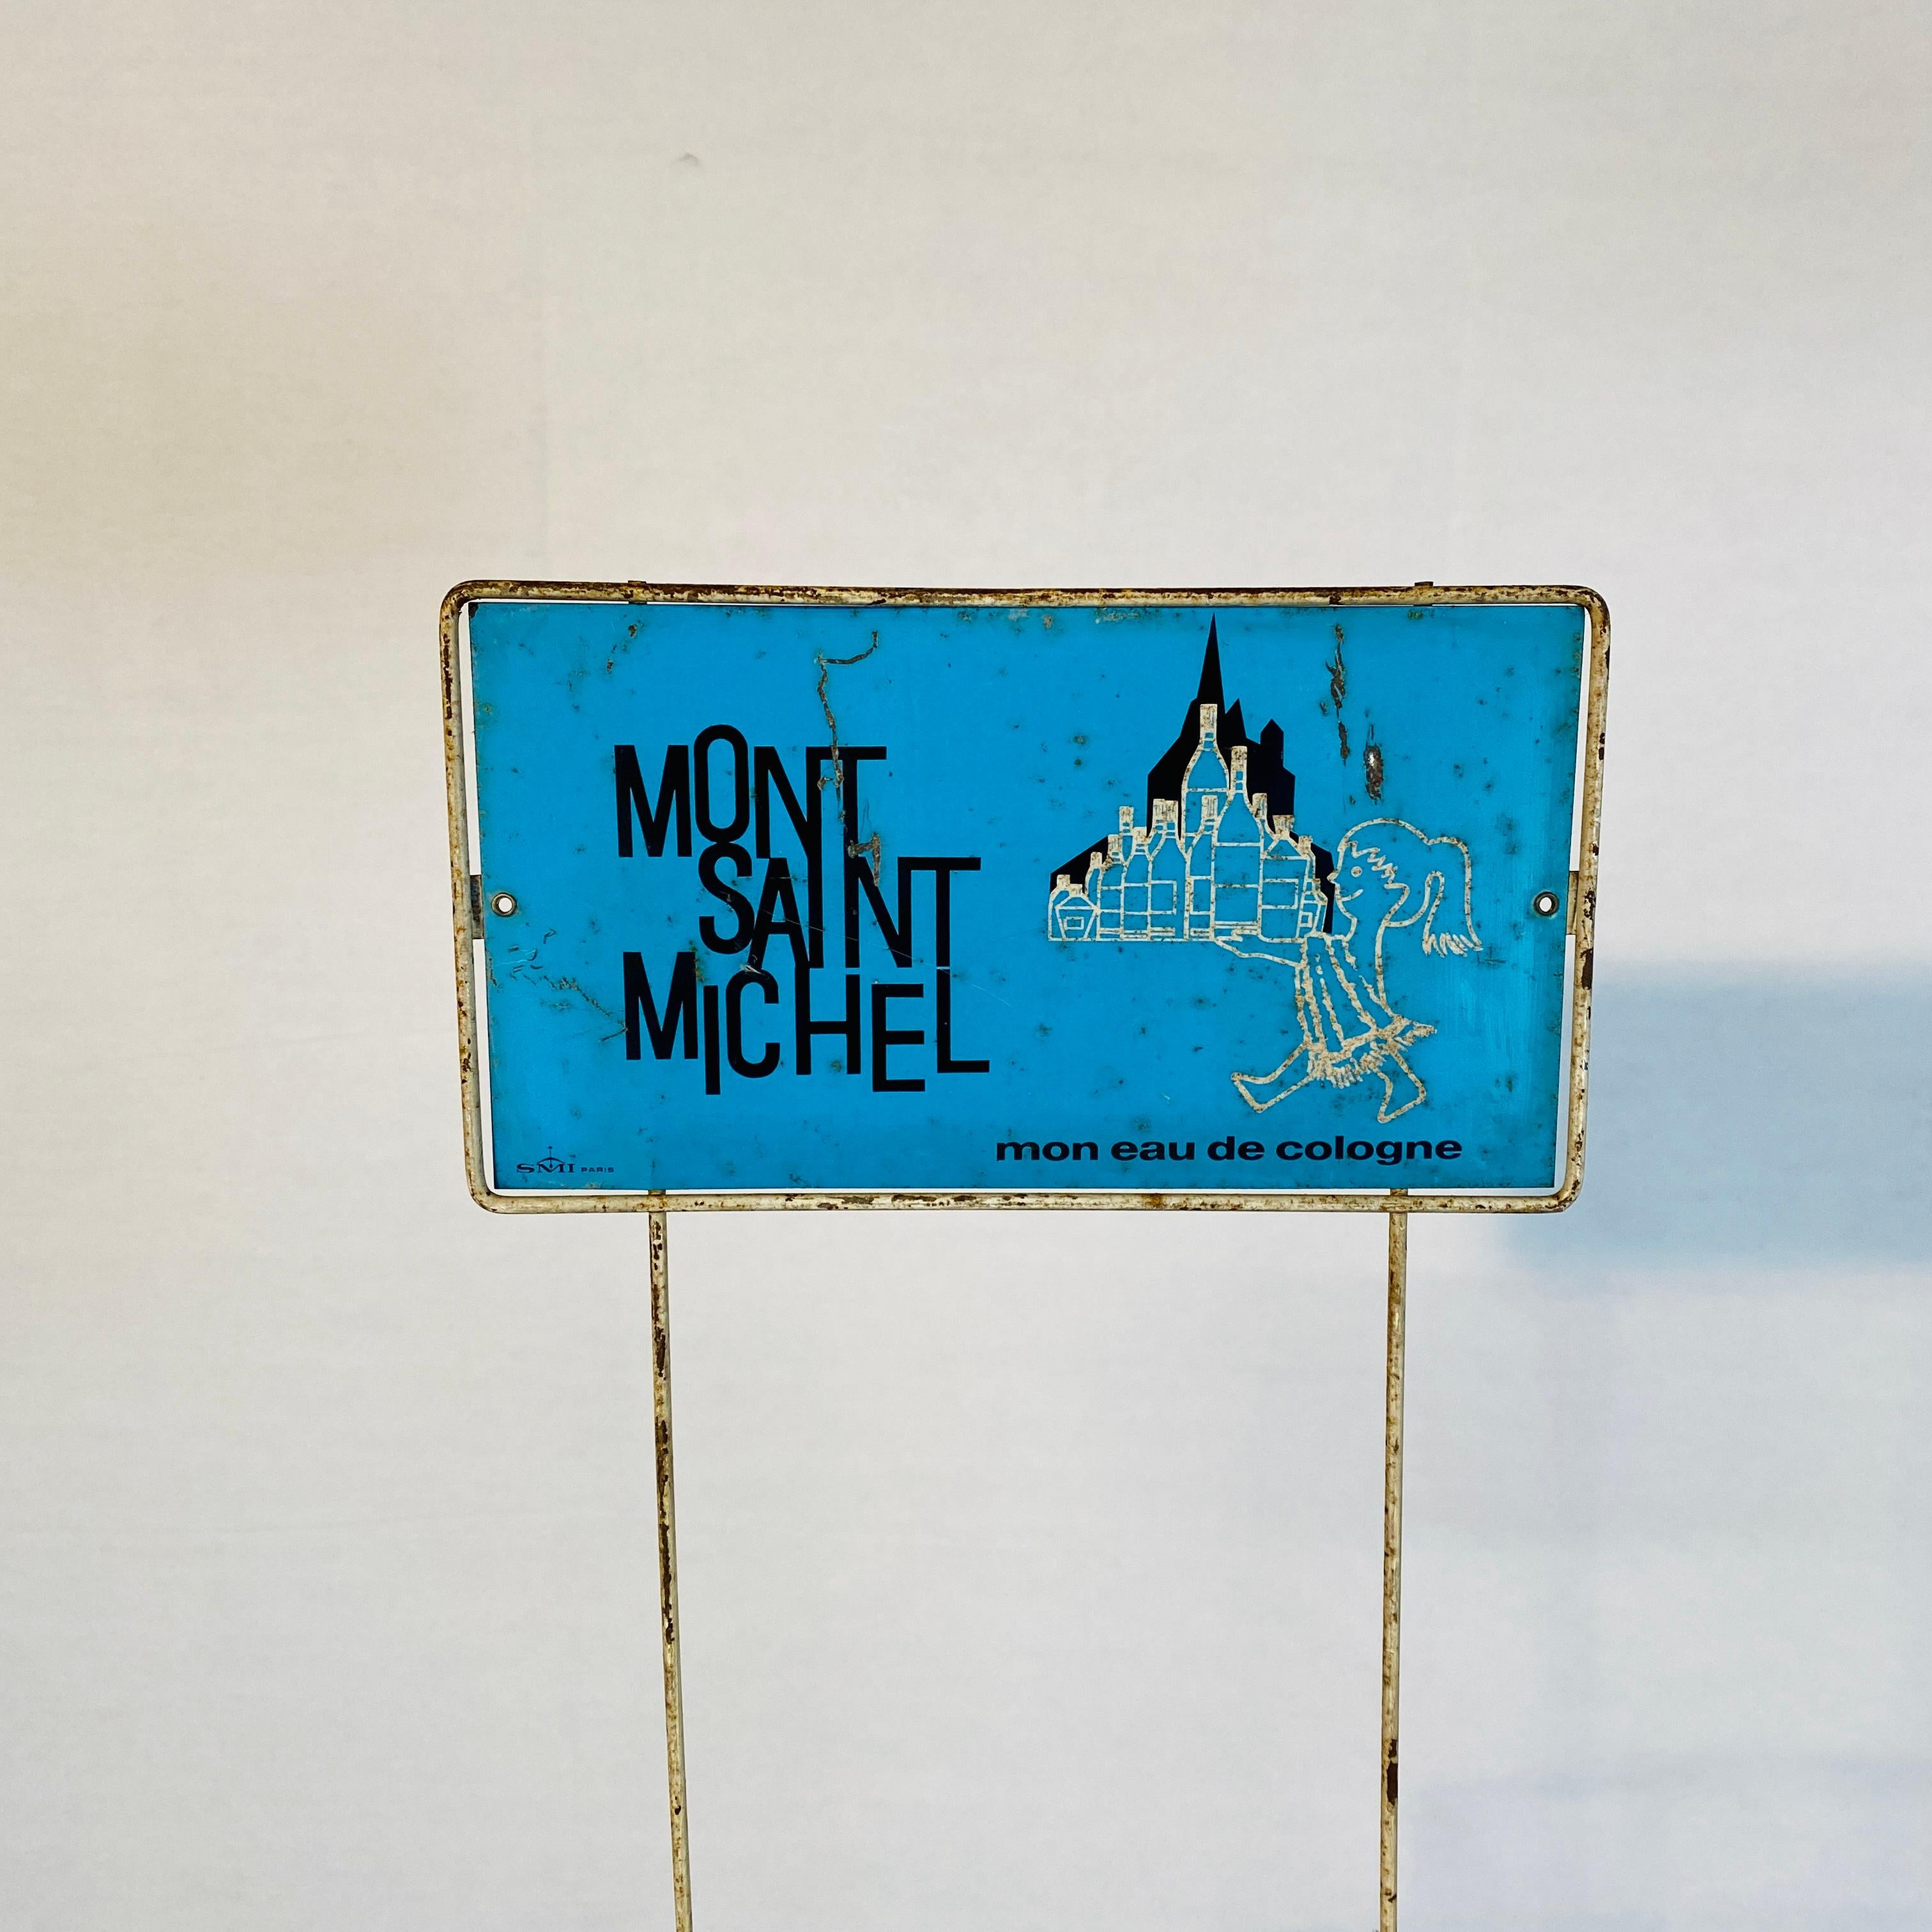 Hübscher französischer Verkaufsständer im Vintage-Stil, ca. 1970er Jahre.

Der Ständer war früher ein Parfümständer von Mont Saint Michel in Frankreich, mit 6 Etagen, aber jetzt würde er mehrere Verwendungsmöglichkeiten im Haushalt haben.

Der